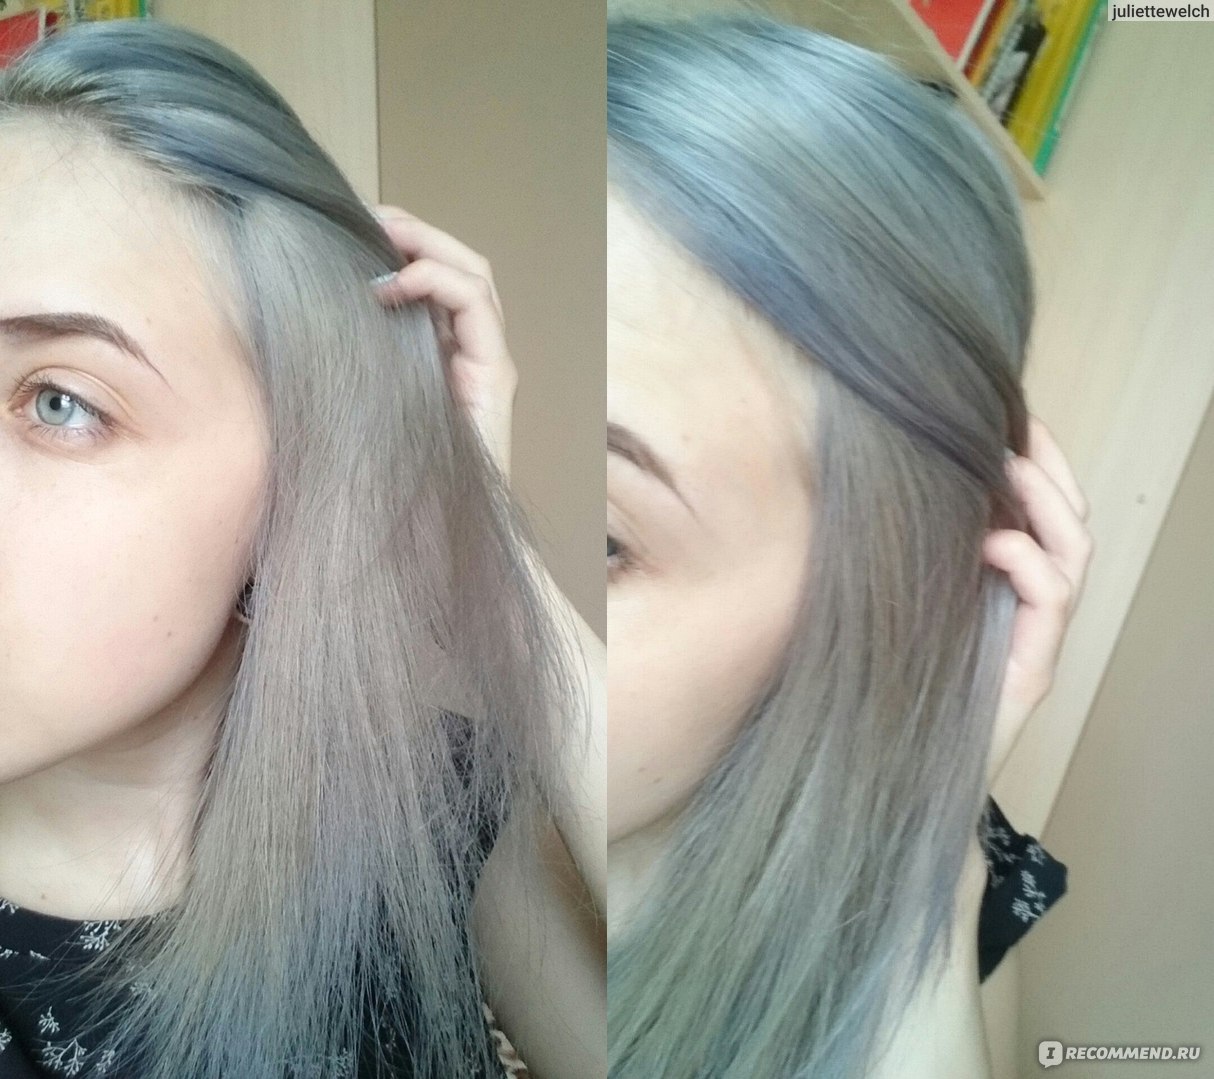 Тоник для волос пепельный фото до и после